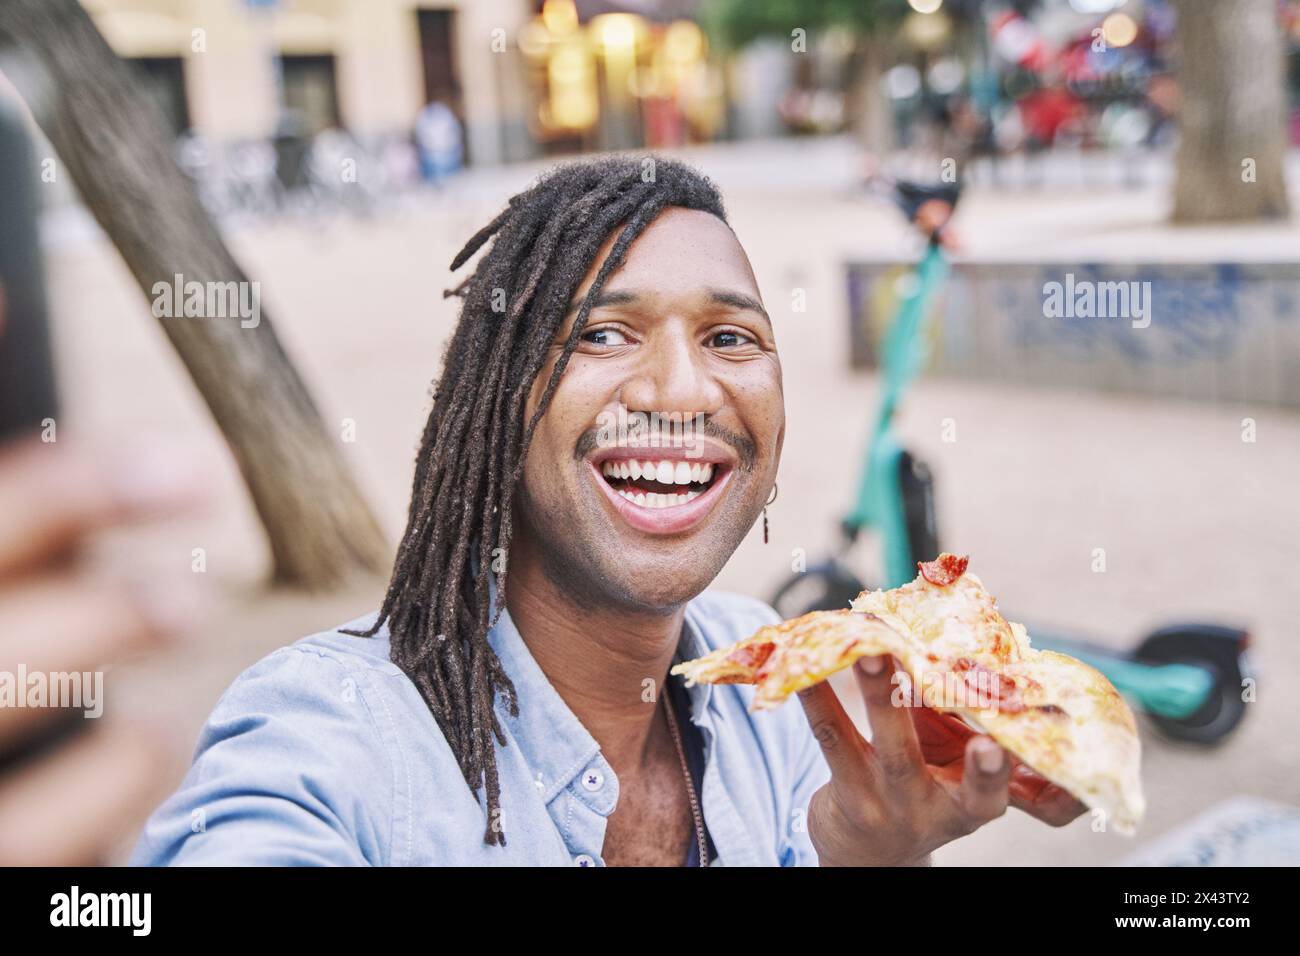 homme attrayant avec des tresses tenant une tranche de pizza dans sa main tout en prenant une photo avec son téléphone intelligent dans la rue Banque D'Images